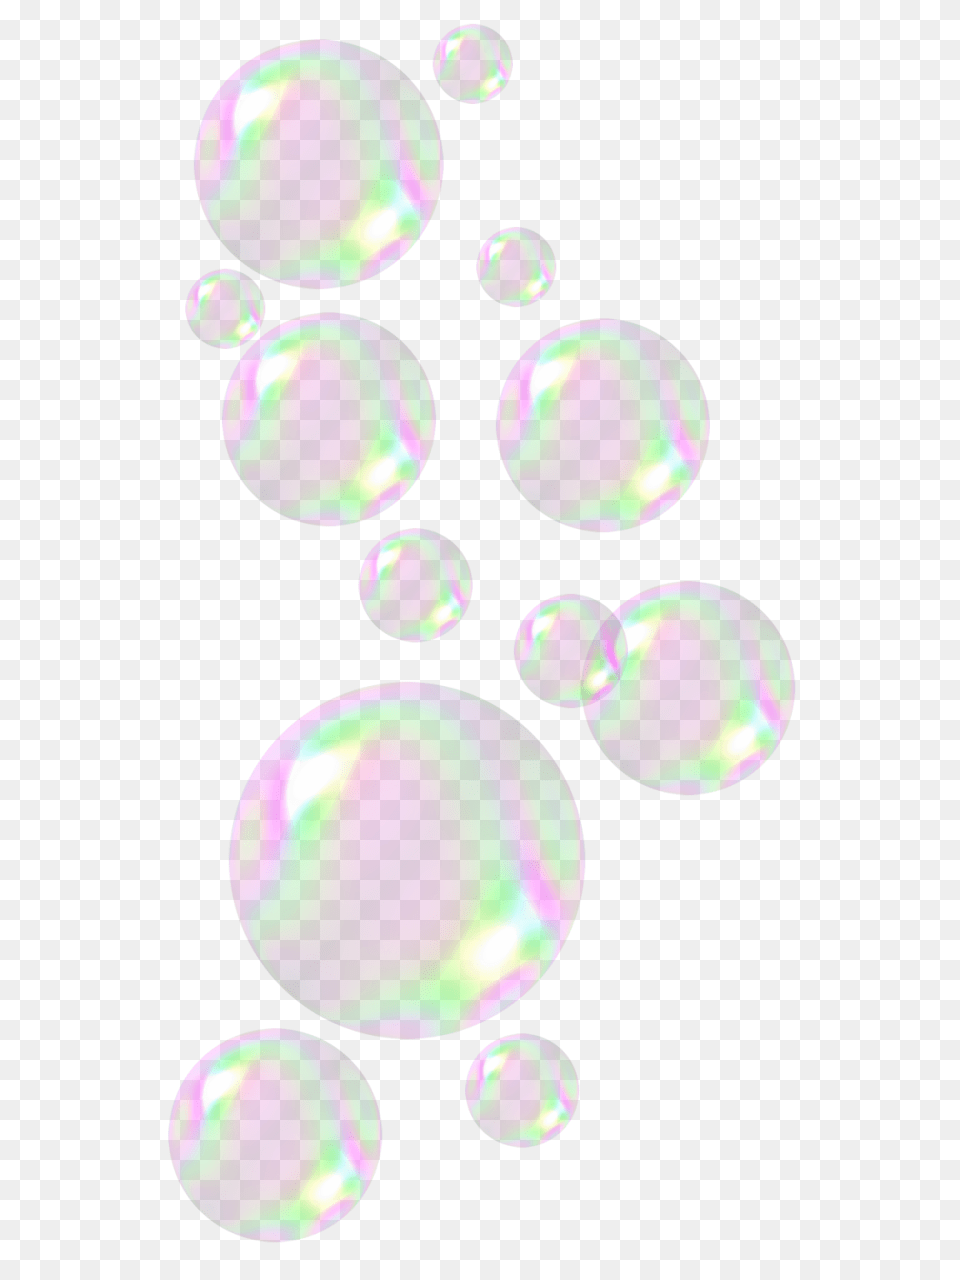 Soap Bubbles, Sphere, Purple, Bubble, Accessories Free Transparent Png